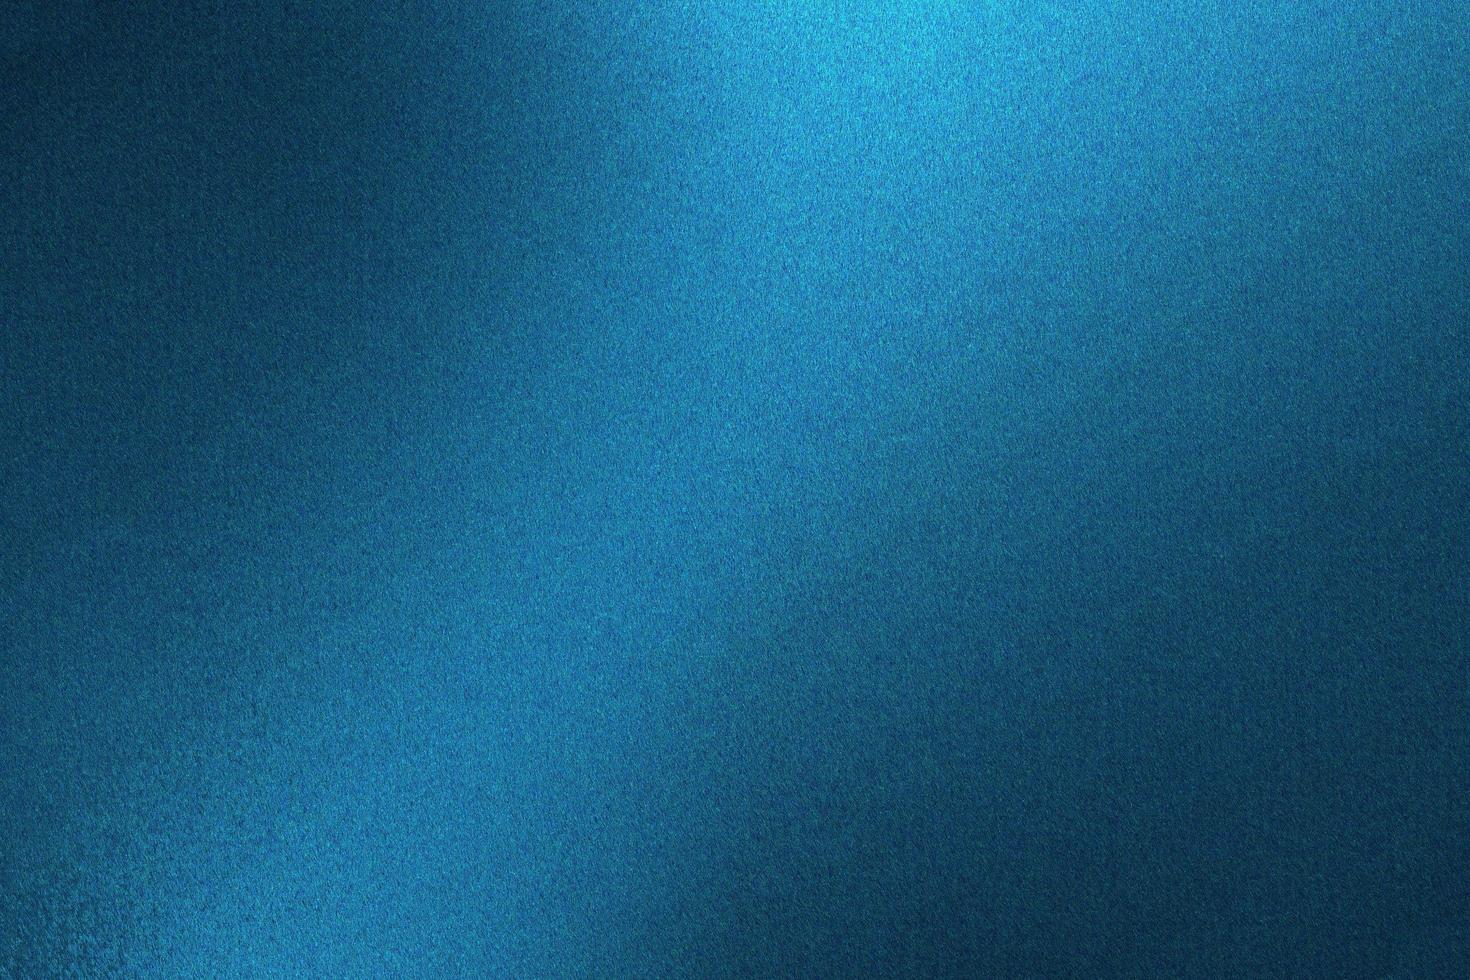 lumière qui brille sur un mur métallique bleu dans une pièce sombre, fond de texture abstraite photo